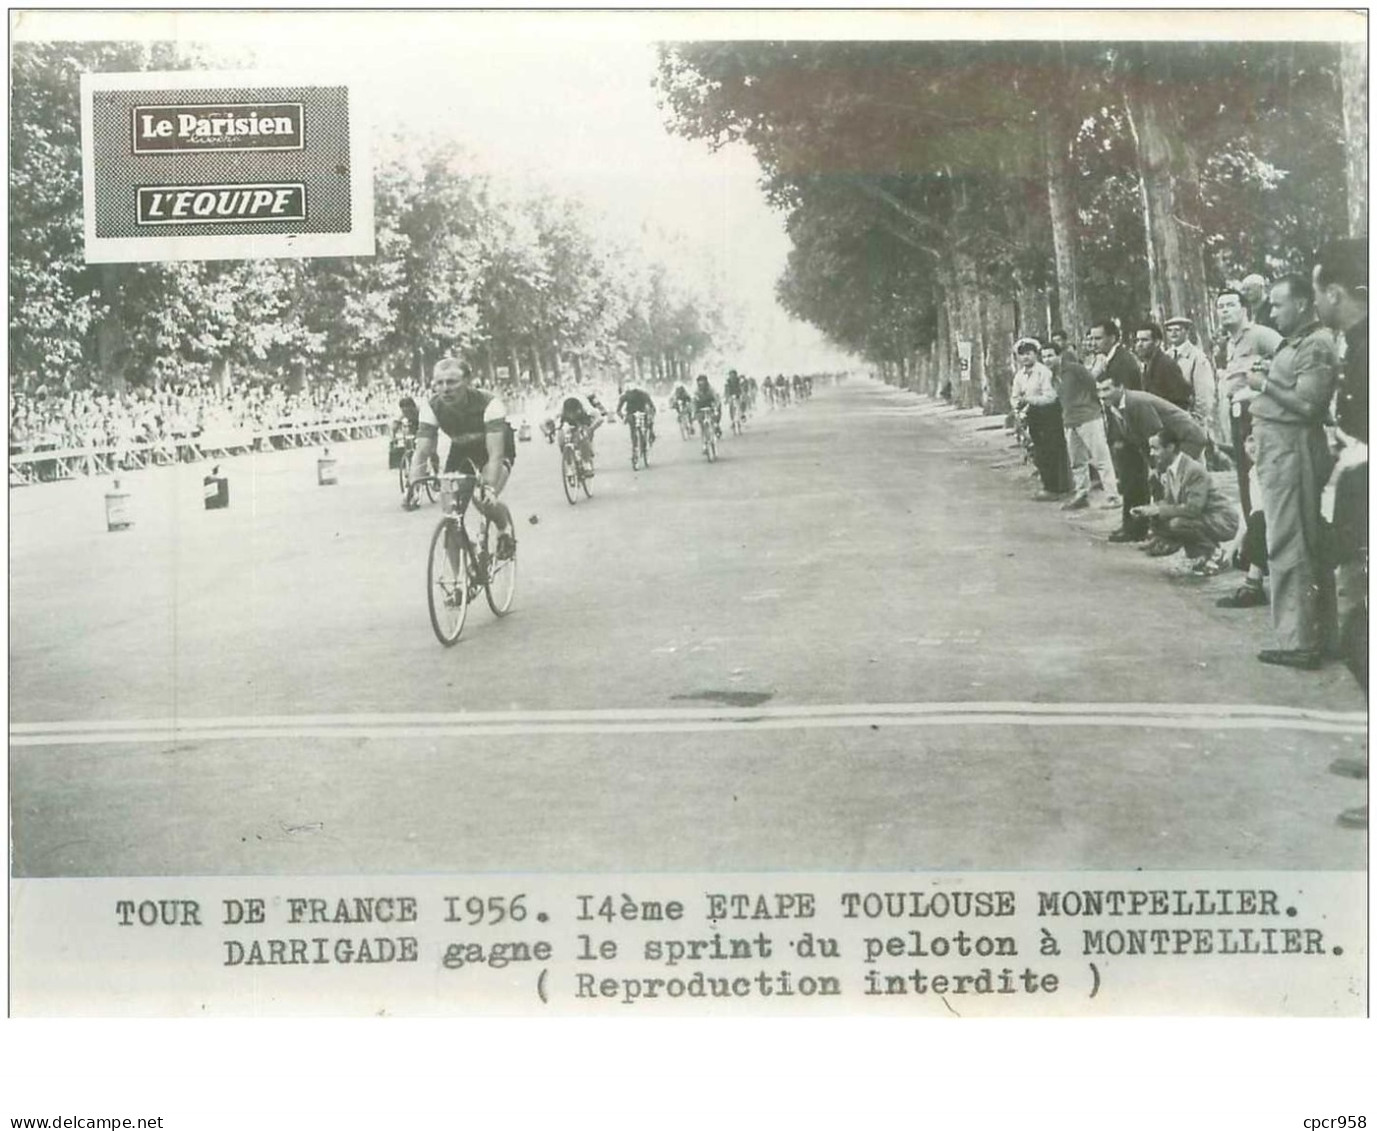 PHOTO DE PRESSE ORIGINALE TOUR DE FRANCE 1956.20X15.14eme ETAPE TOULOUSE MONTPELLIER.DARRIGADE GAGNE LE SPRINT.n°18679 - Ciclismo